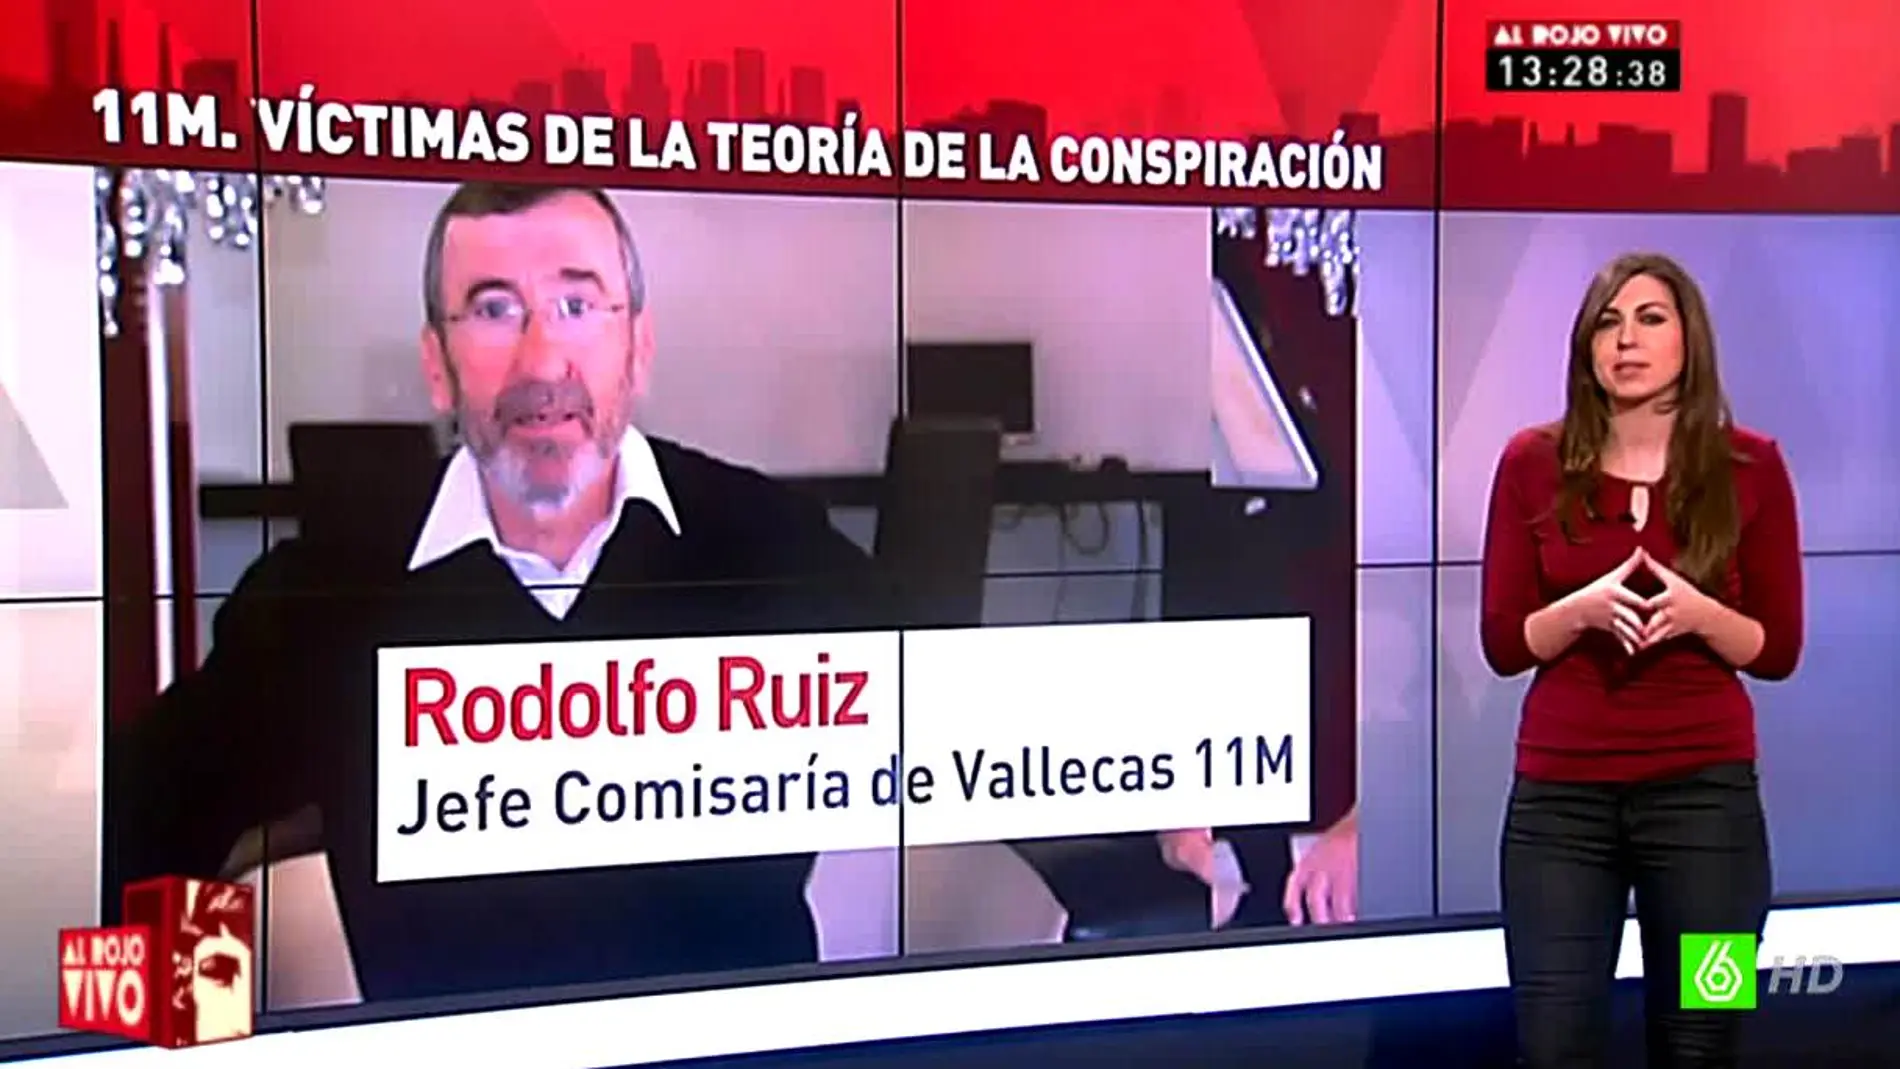 Rodolfo Ruiz, comisario de Vallecas